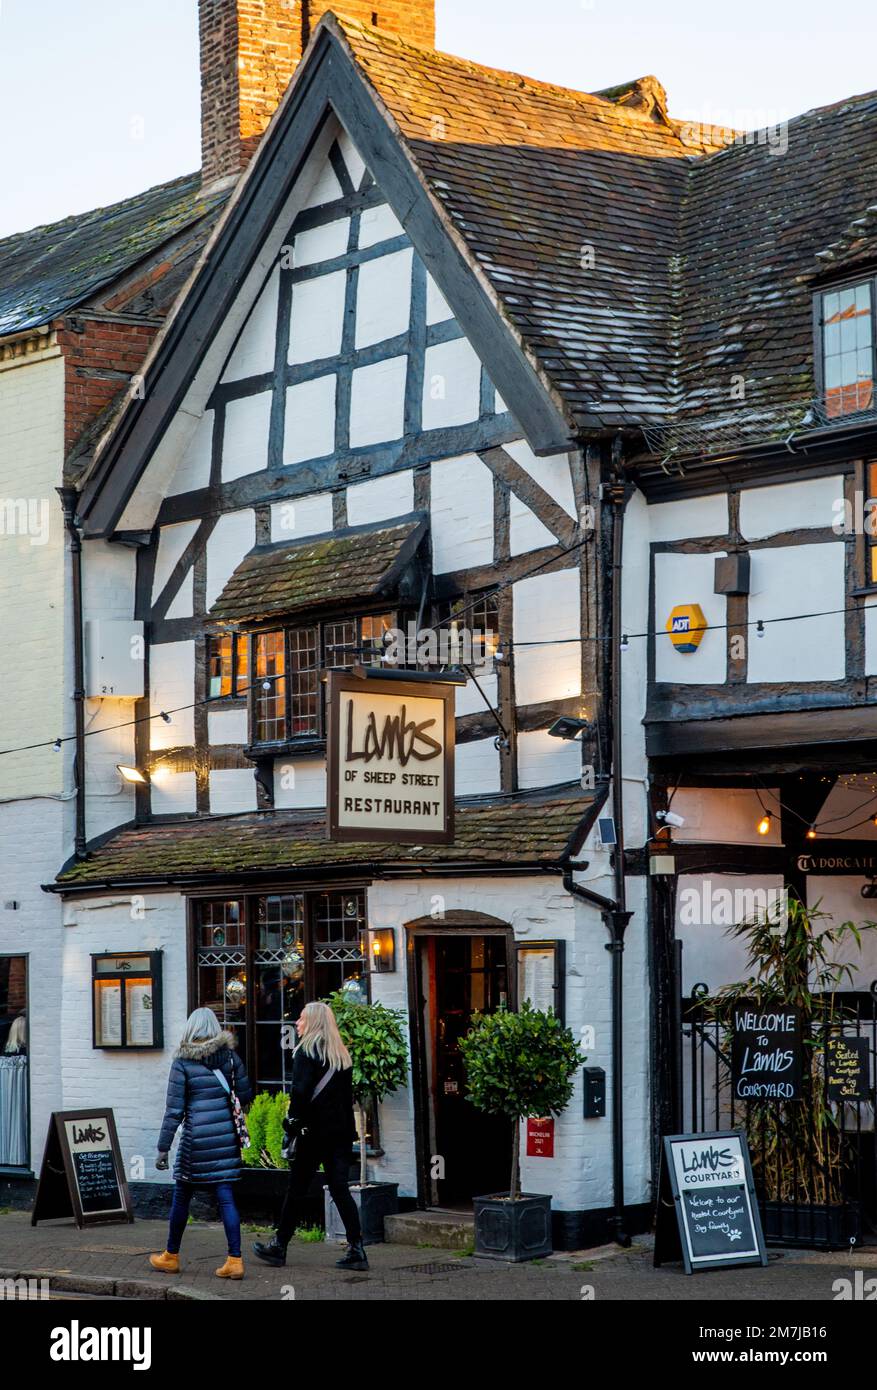 Il ristorante Lambs si trova in Sheep Street, Stratford on Avon, uno degli edifici piu' vecchi della citta'. Risale agli inizi del XVI secolo Foto Stock